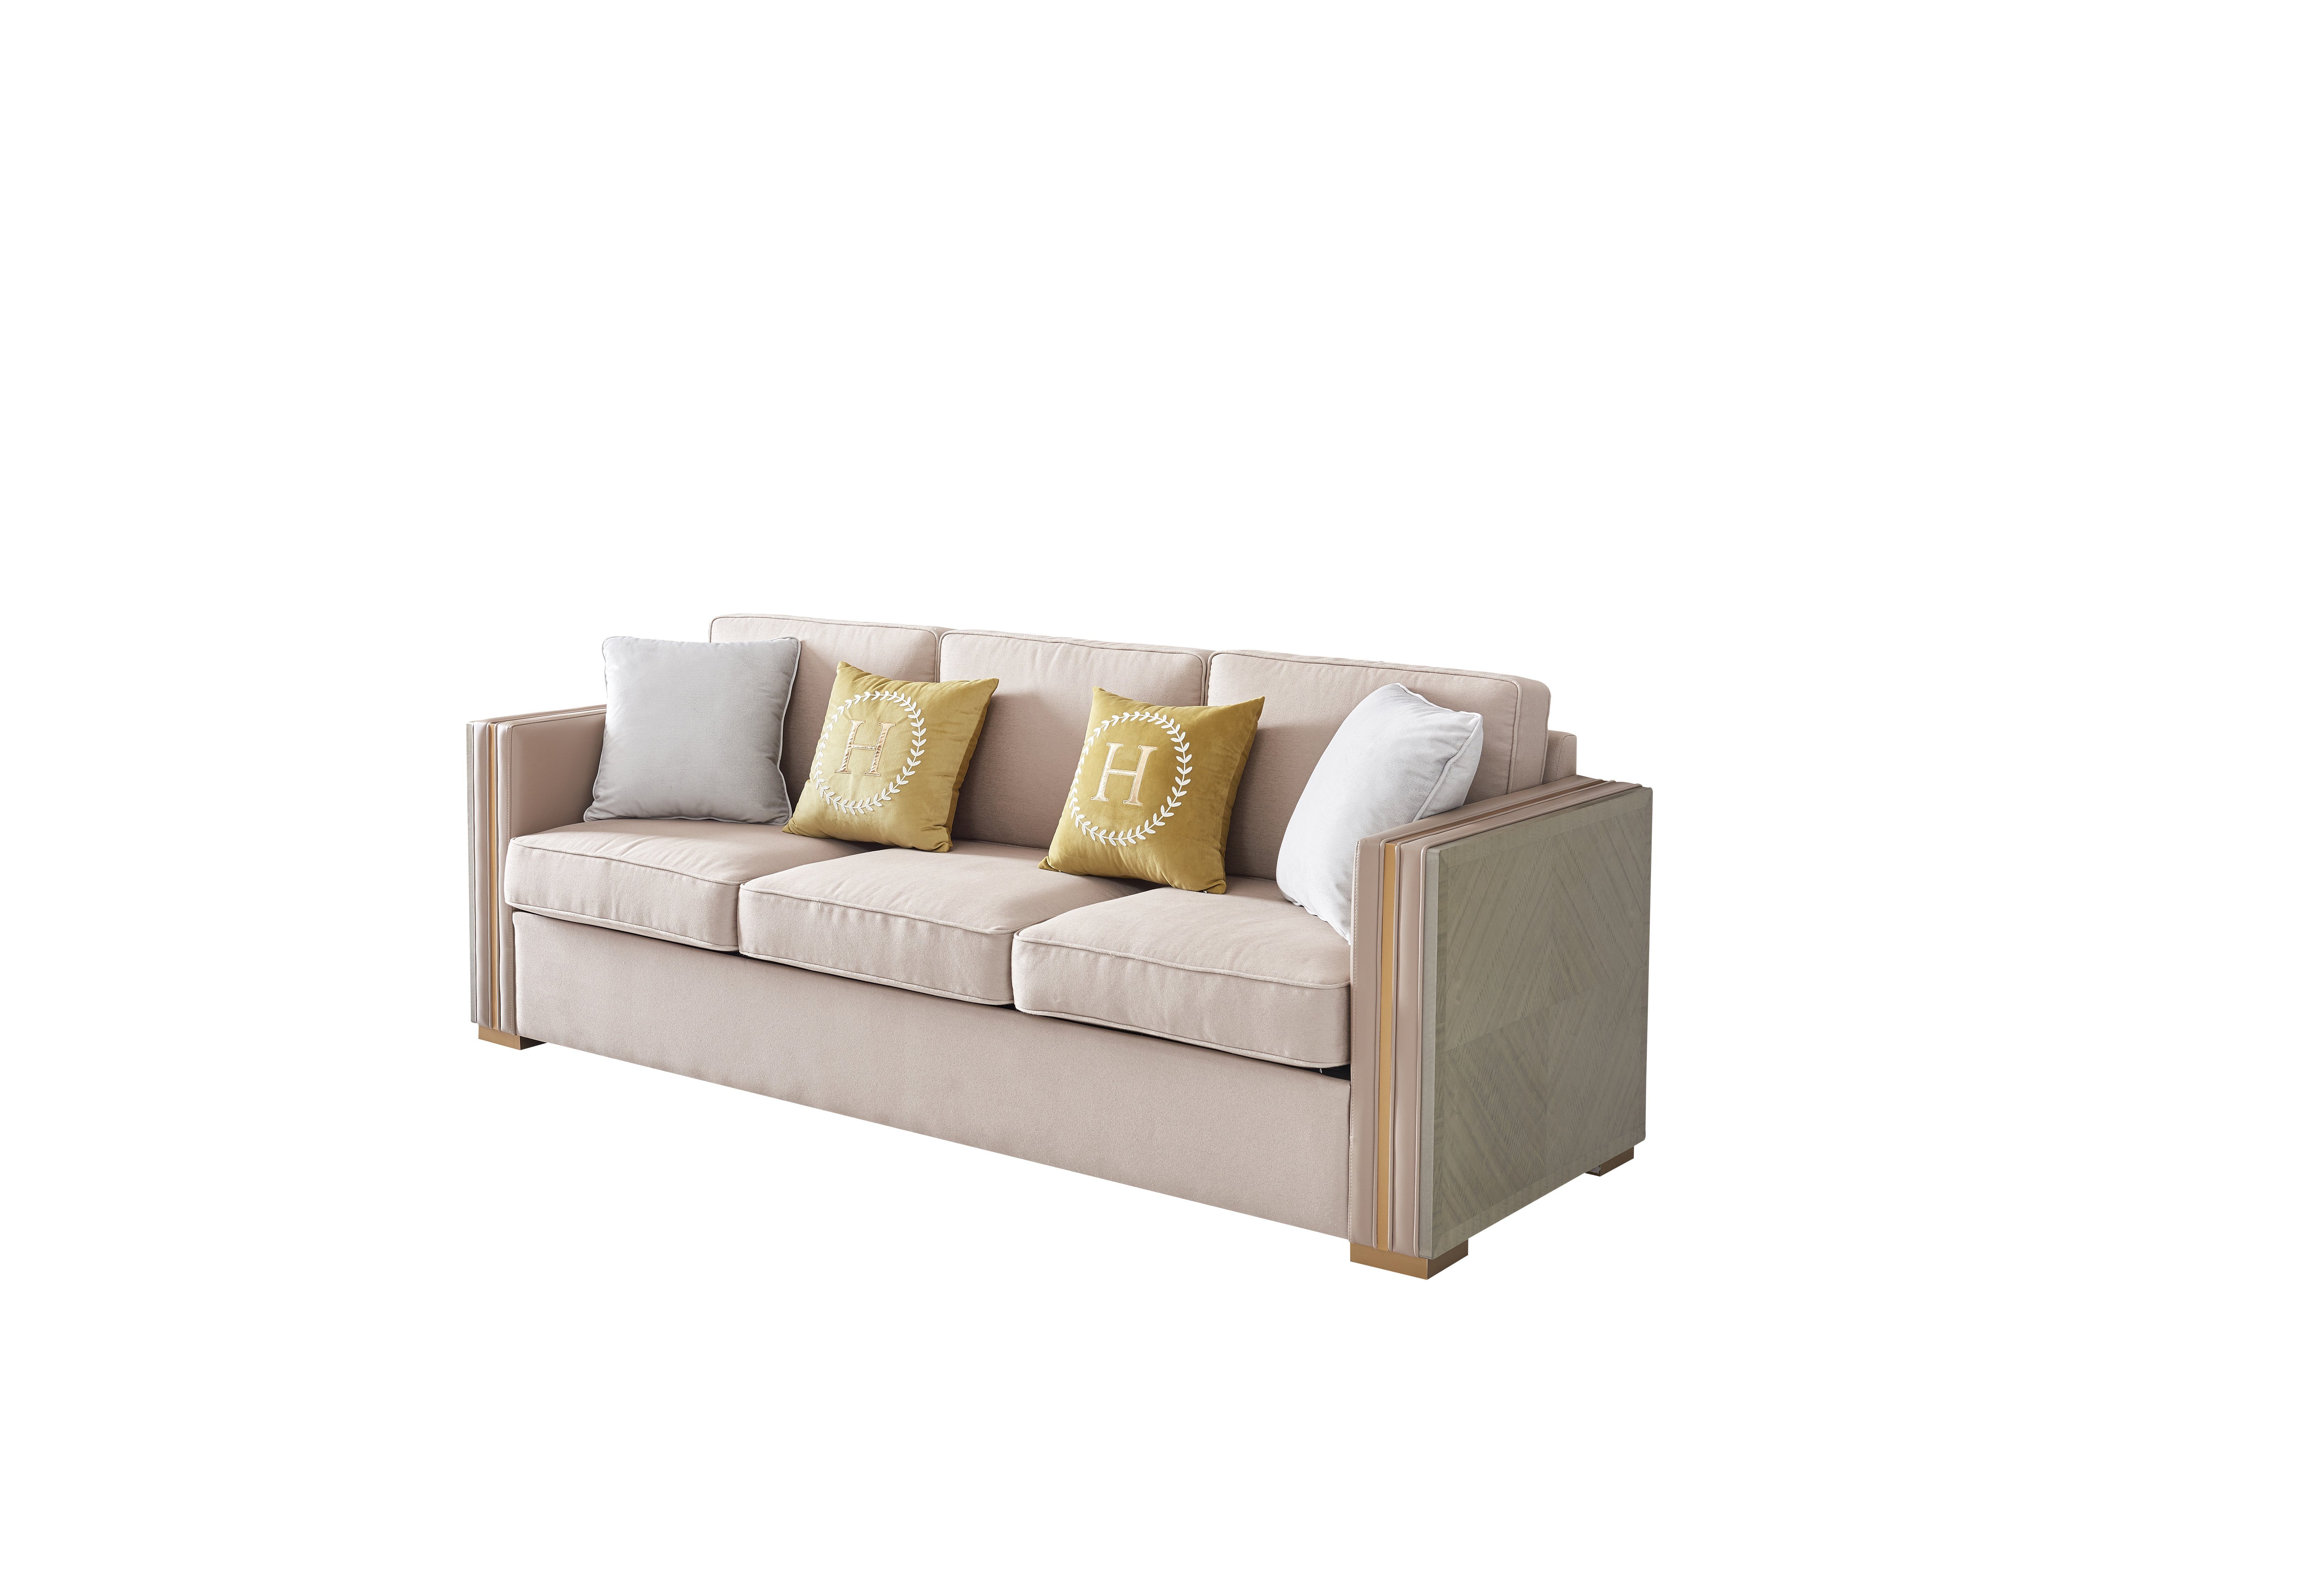 Design, Dreisitzer Sofa Möbel JVmoebel Luxus Wohnzimmer Modernes Europe Made in Polster Beiger